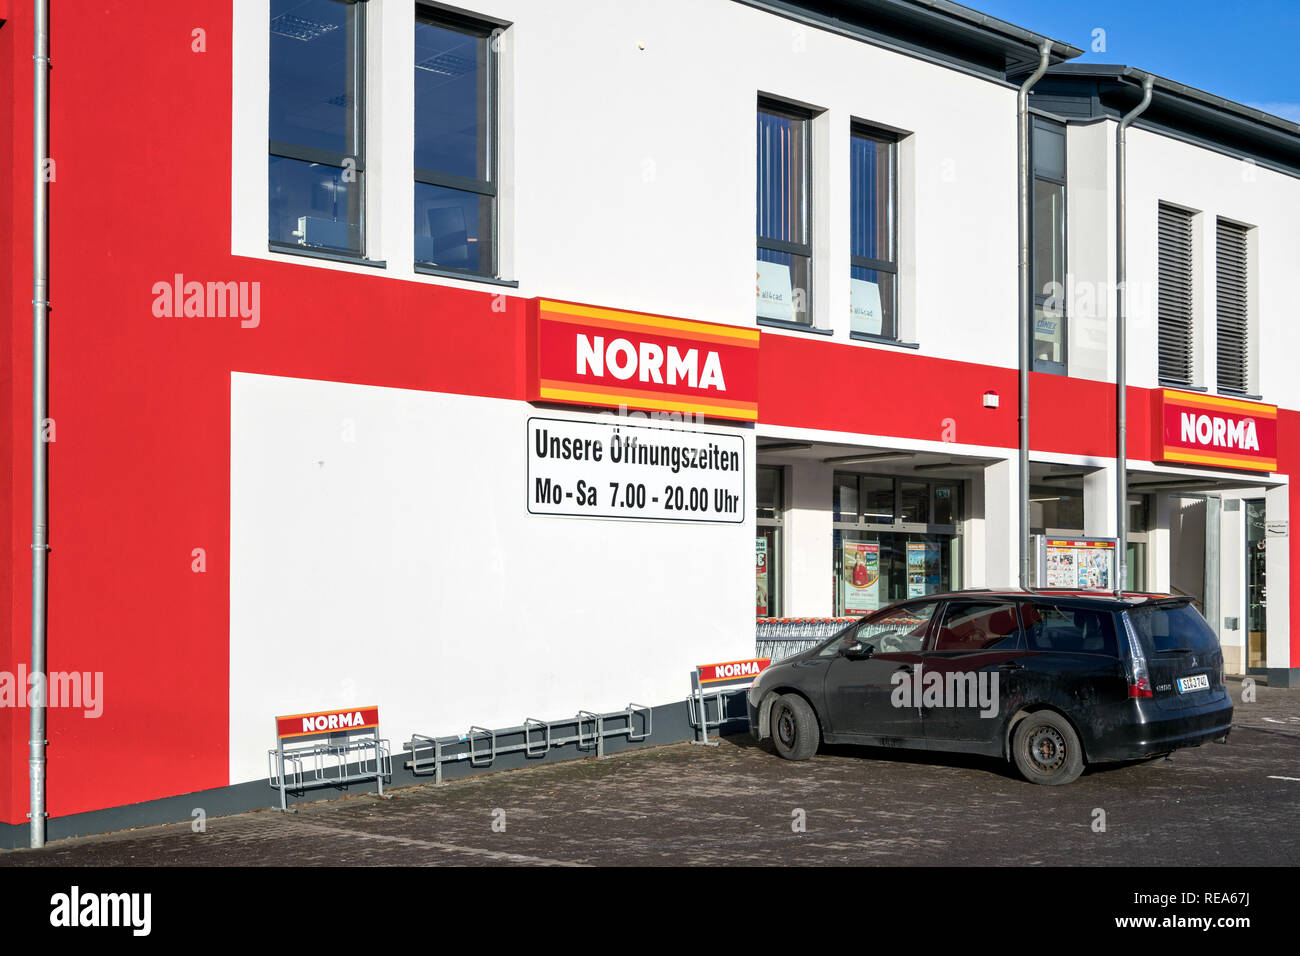 La norma filiale a Valcroce, Germania. La norma è un alimento di sconto negozio con più di 1.300 negozi in Germania, Austria, Francia e Repubblica Ceca. Foto Stock